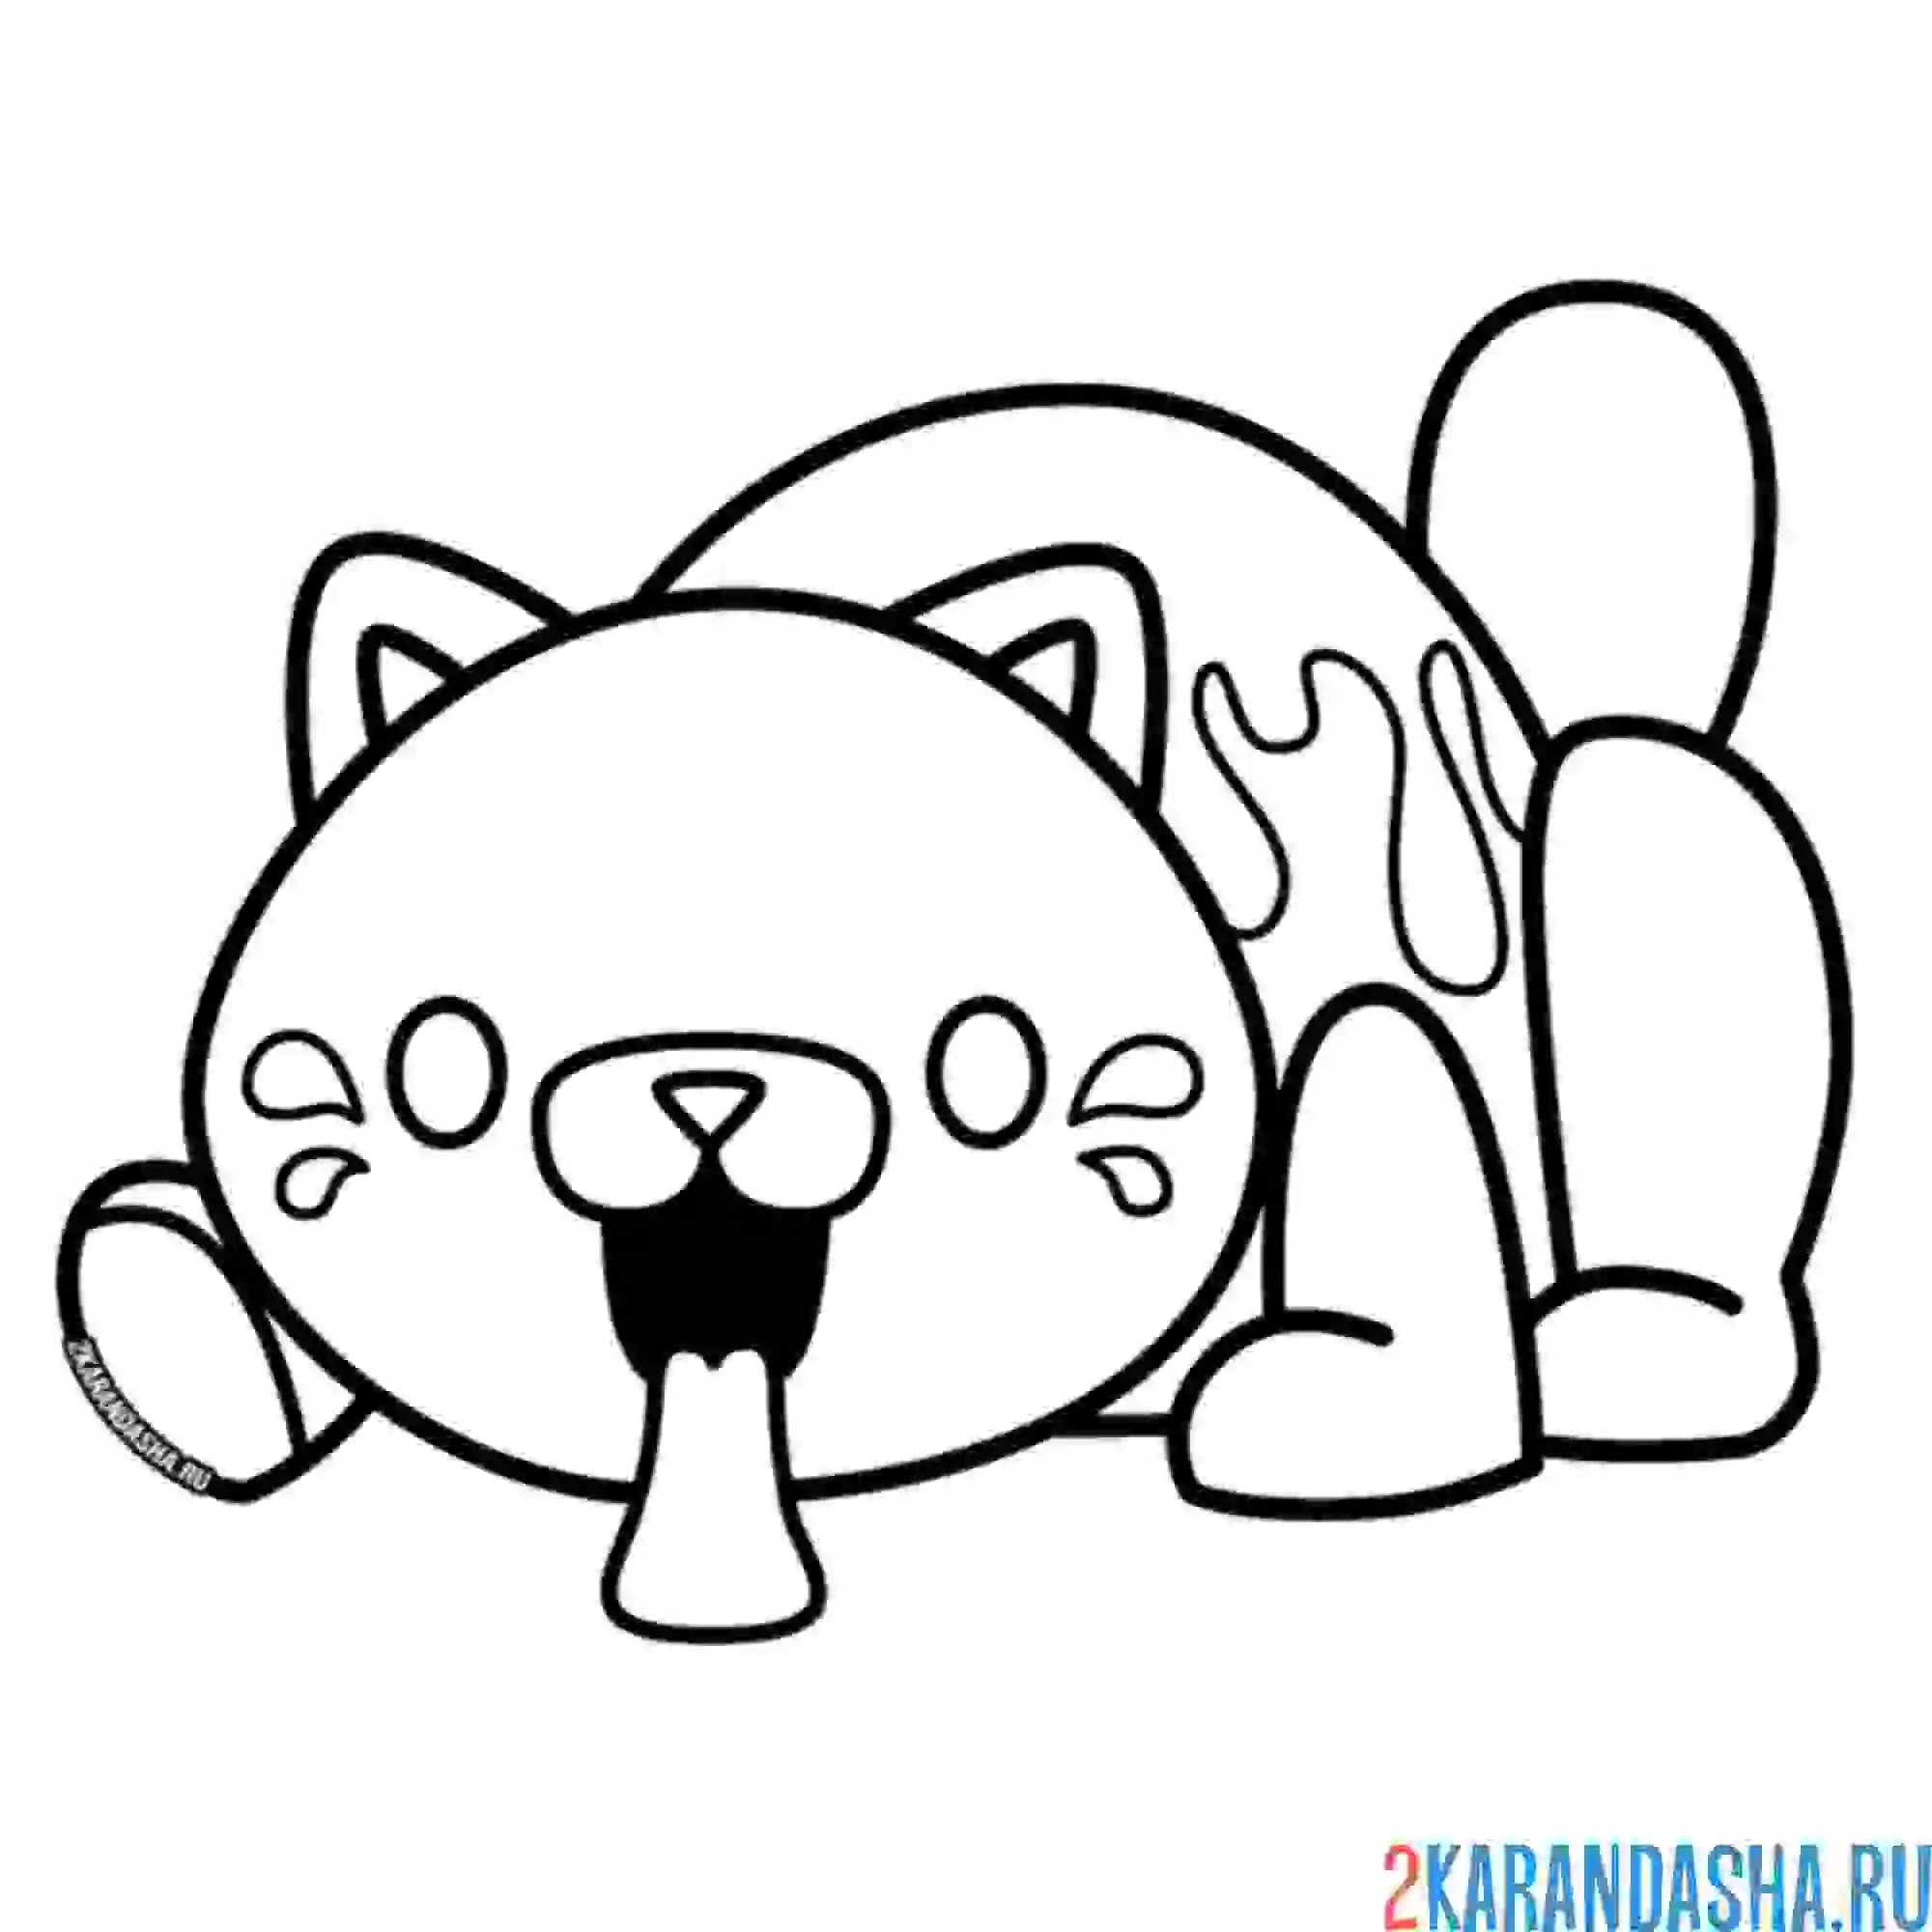 Раскраска конфетная кошка поппи плейтам (кэнди кэт)